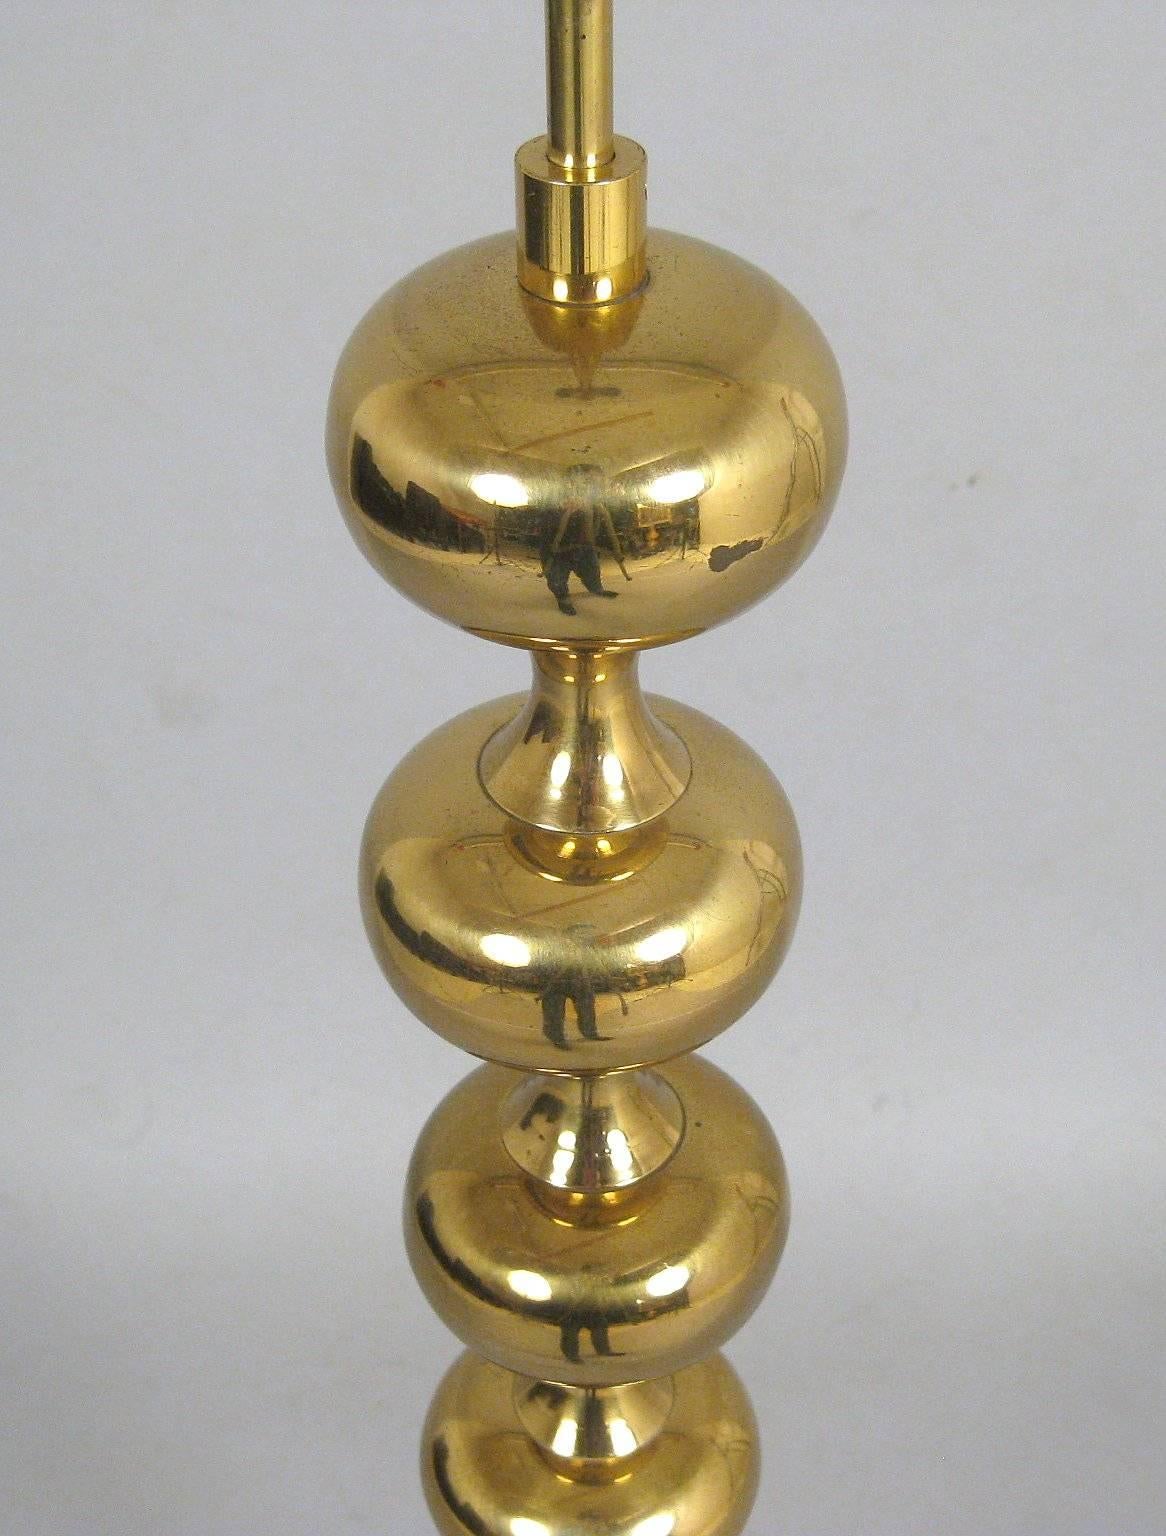 Danish brass floor lamp comprised of multiple spheres, 1960s-1970s.